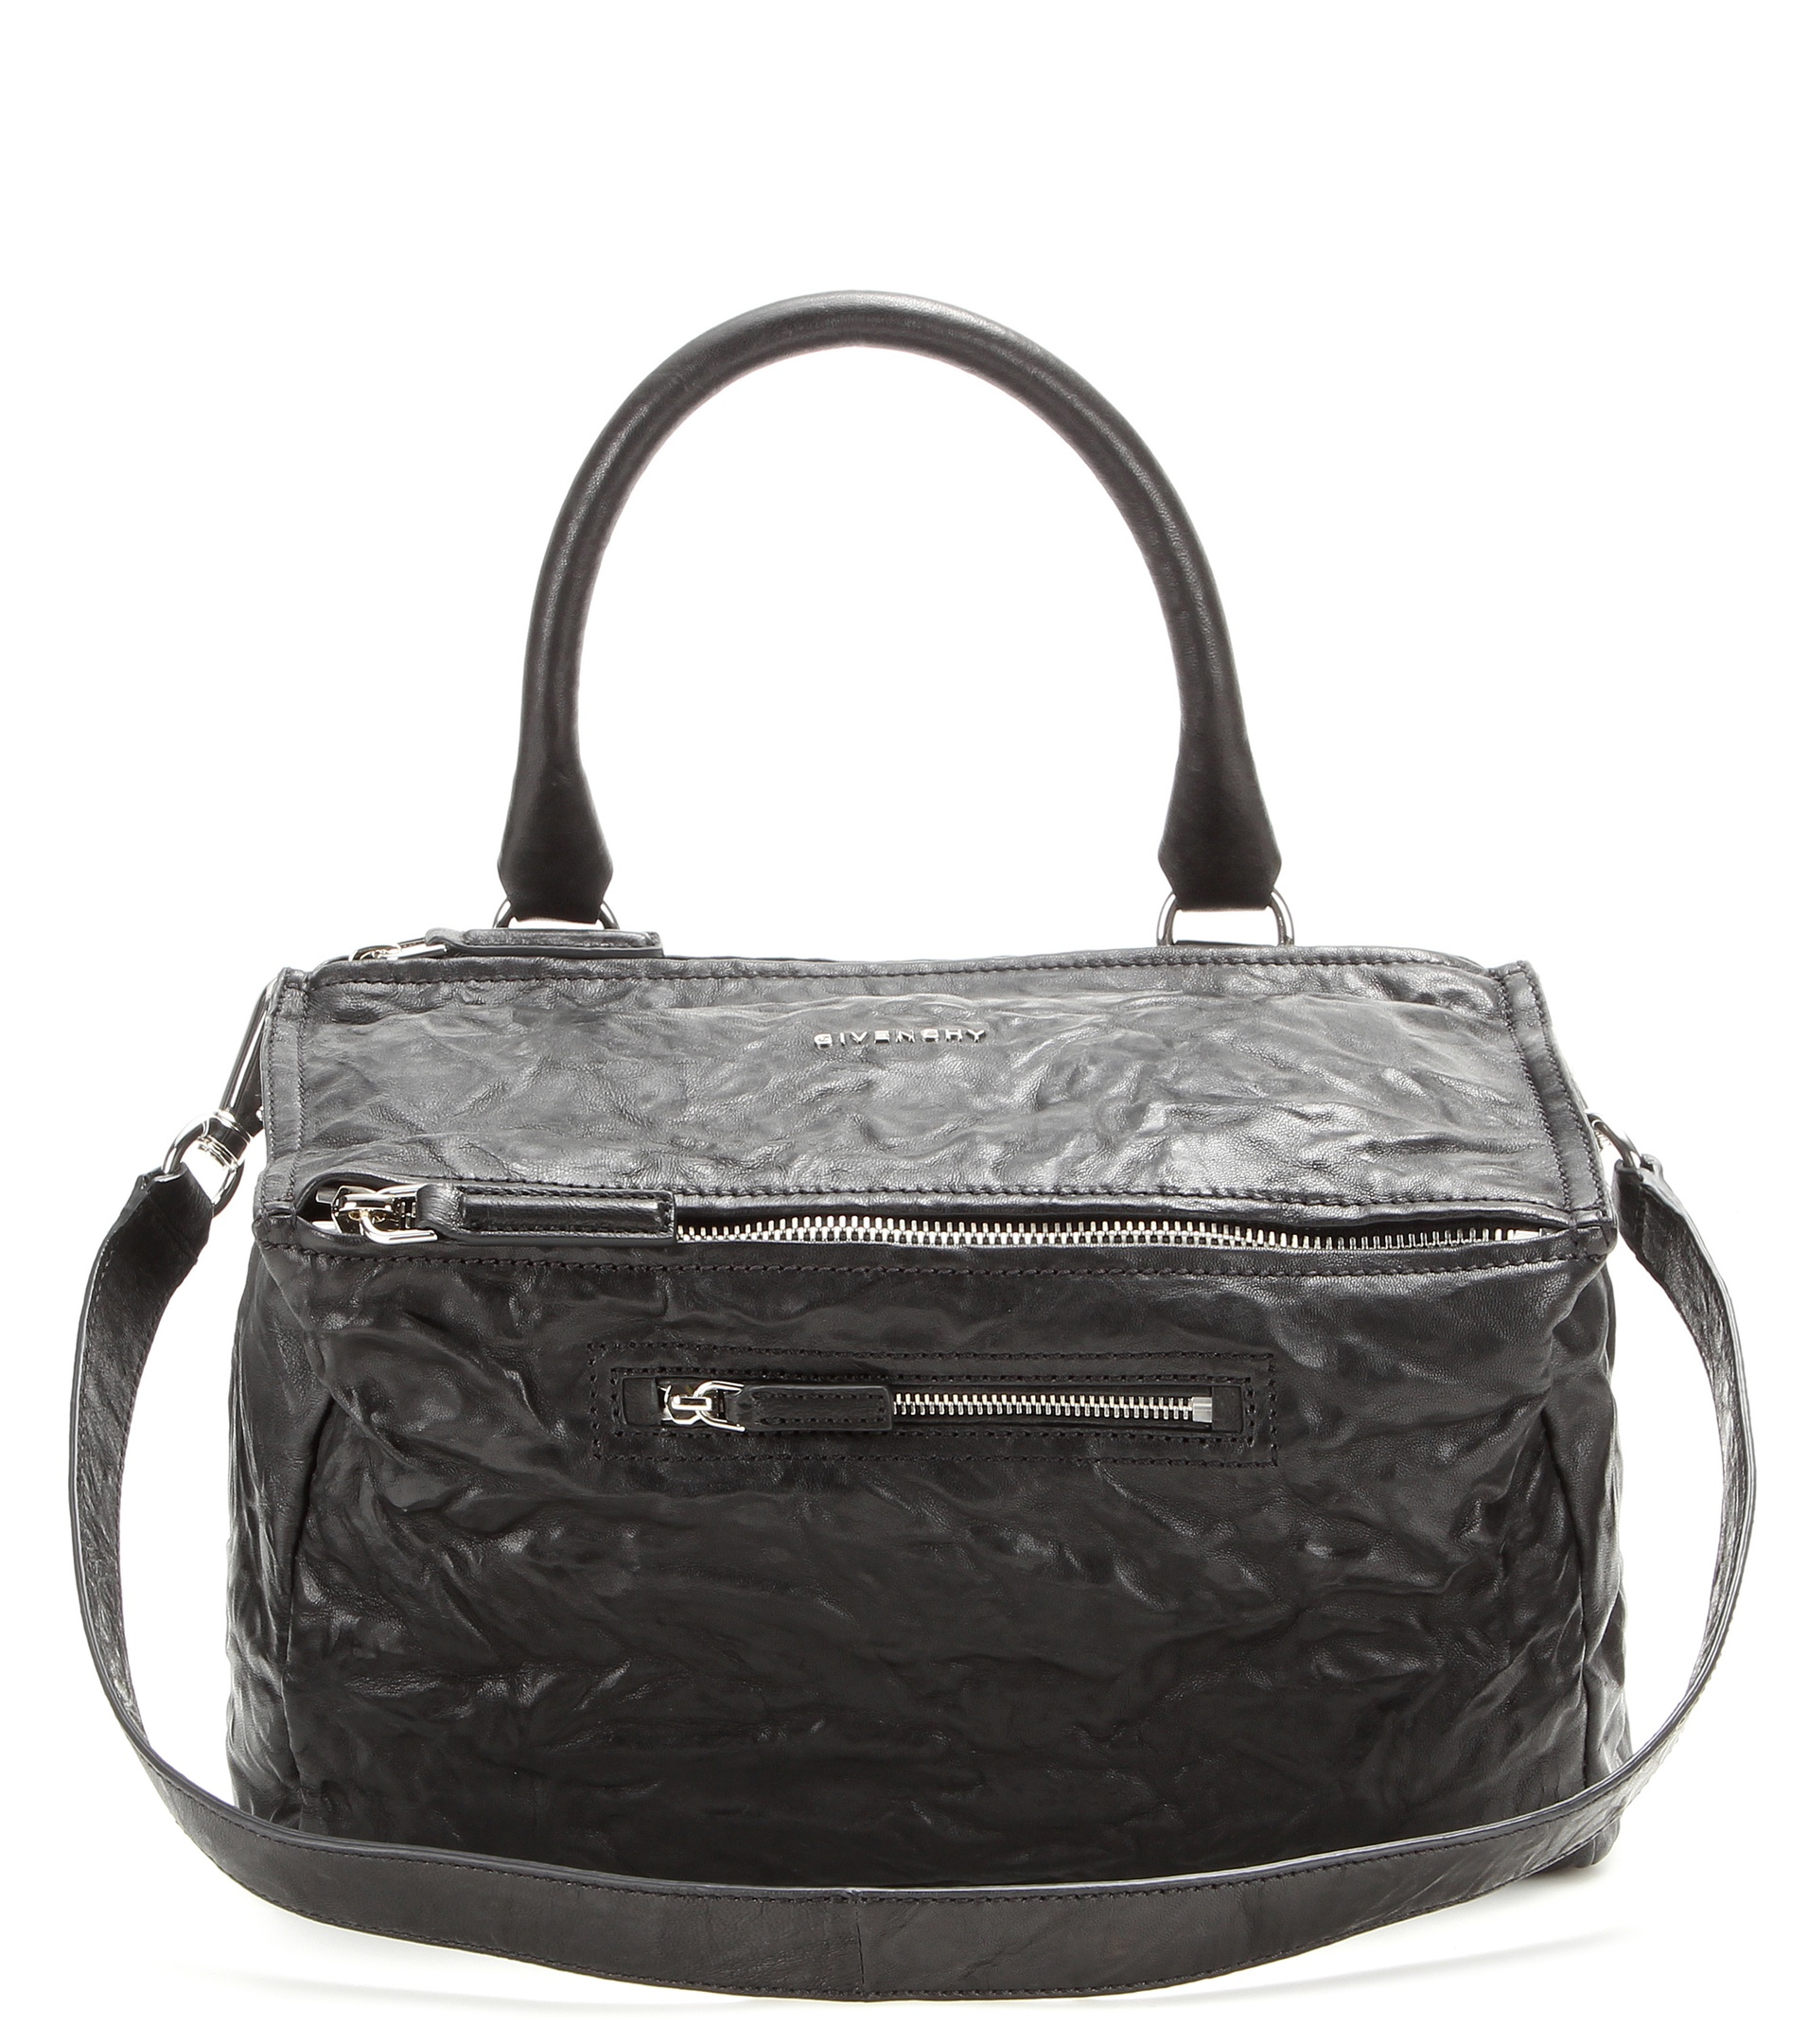 Givenchy Pandora Medium Leather Shoulder Bag in Black | Lyst